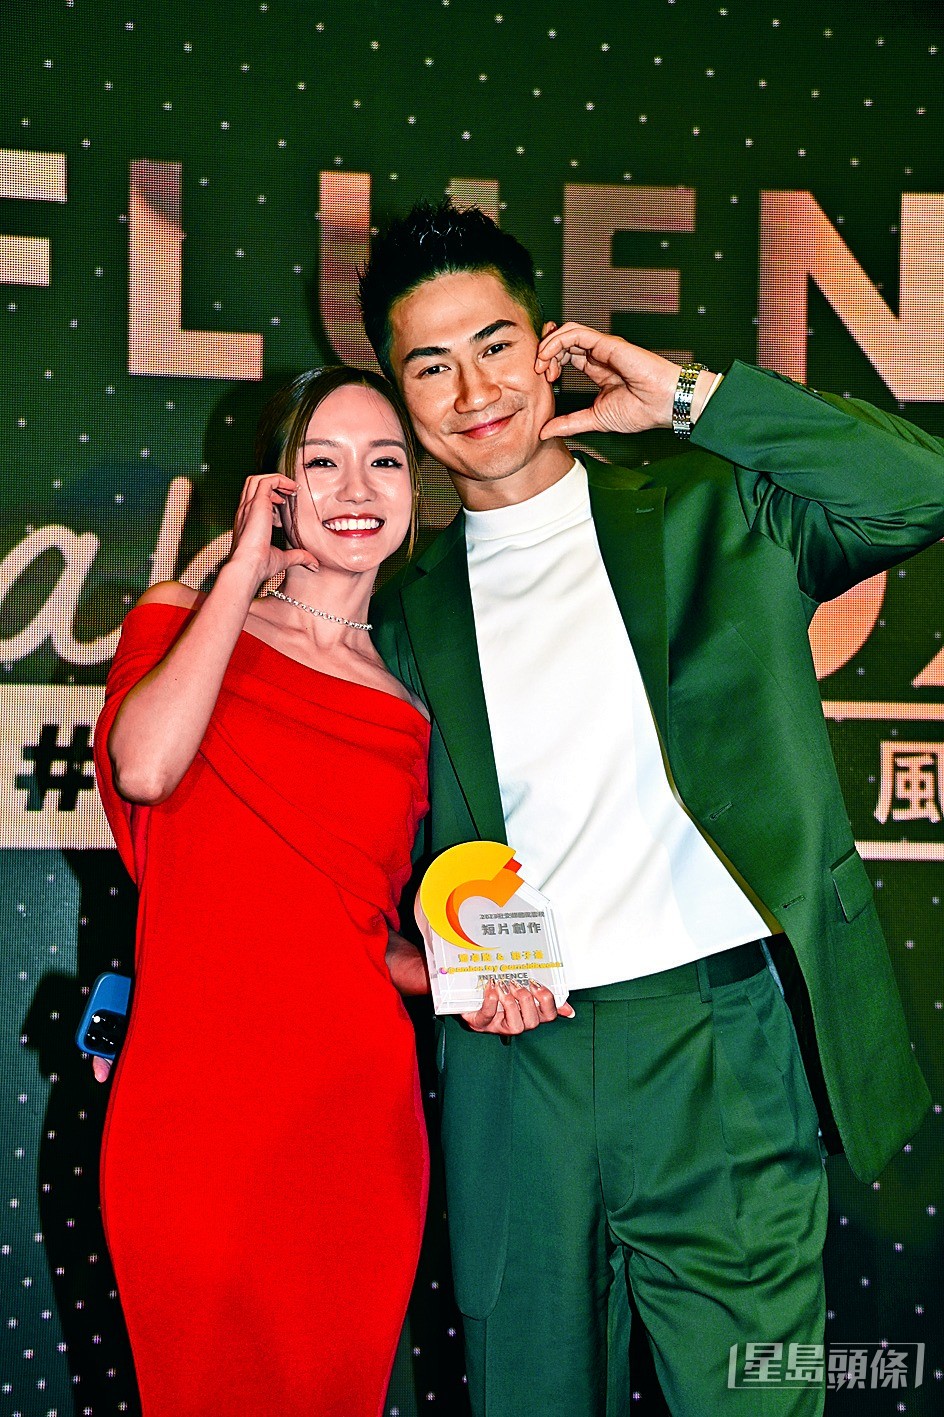 郭子豪與女友鄧卓殷在《香港社交媒體風雲榜》獲頒短片創作獎項。